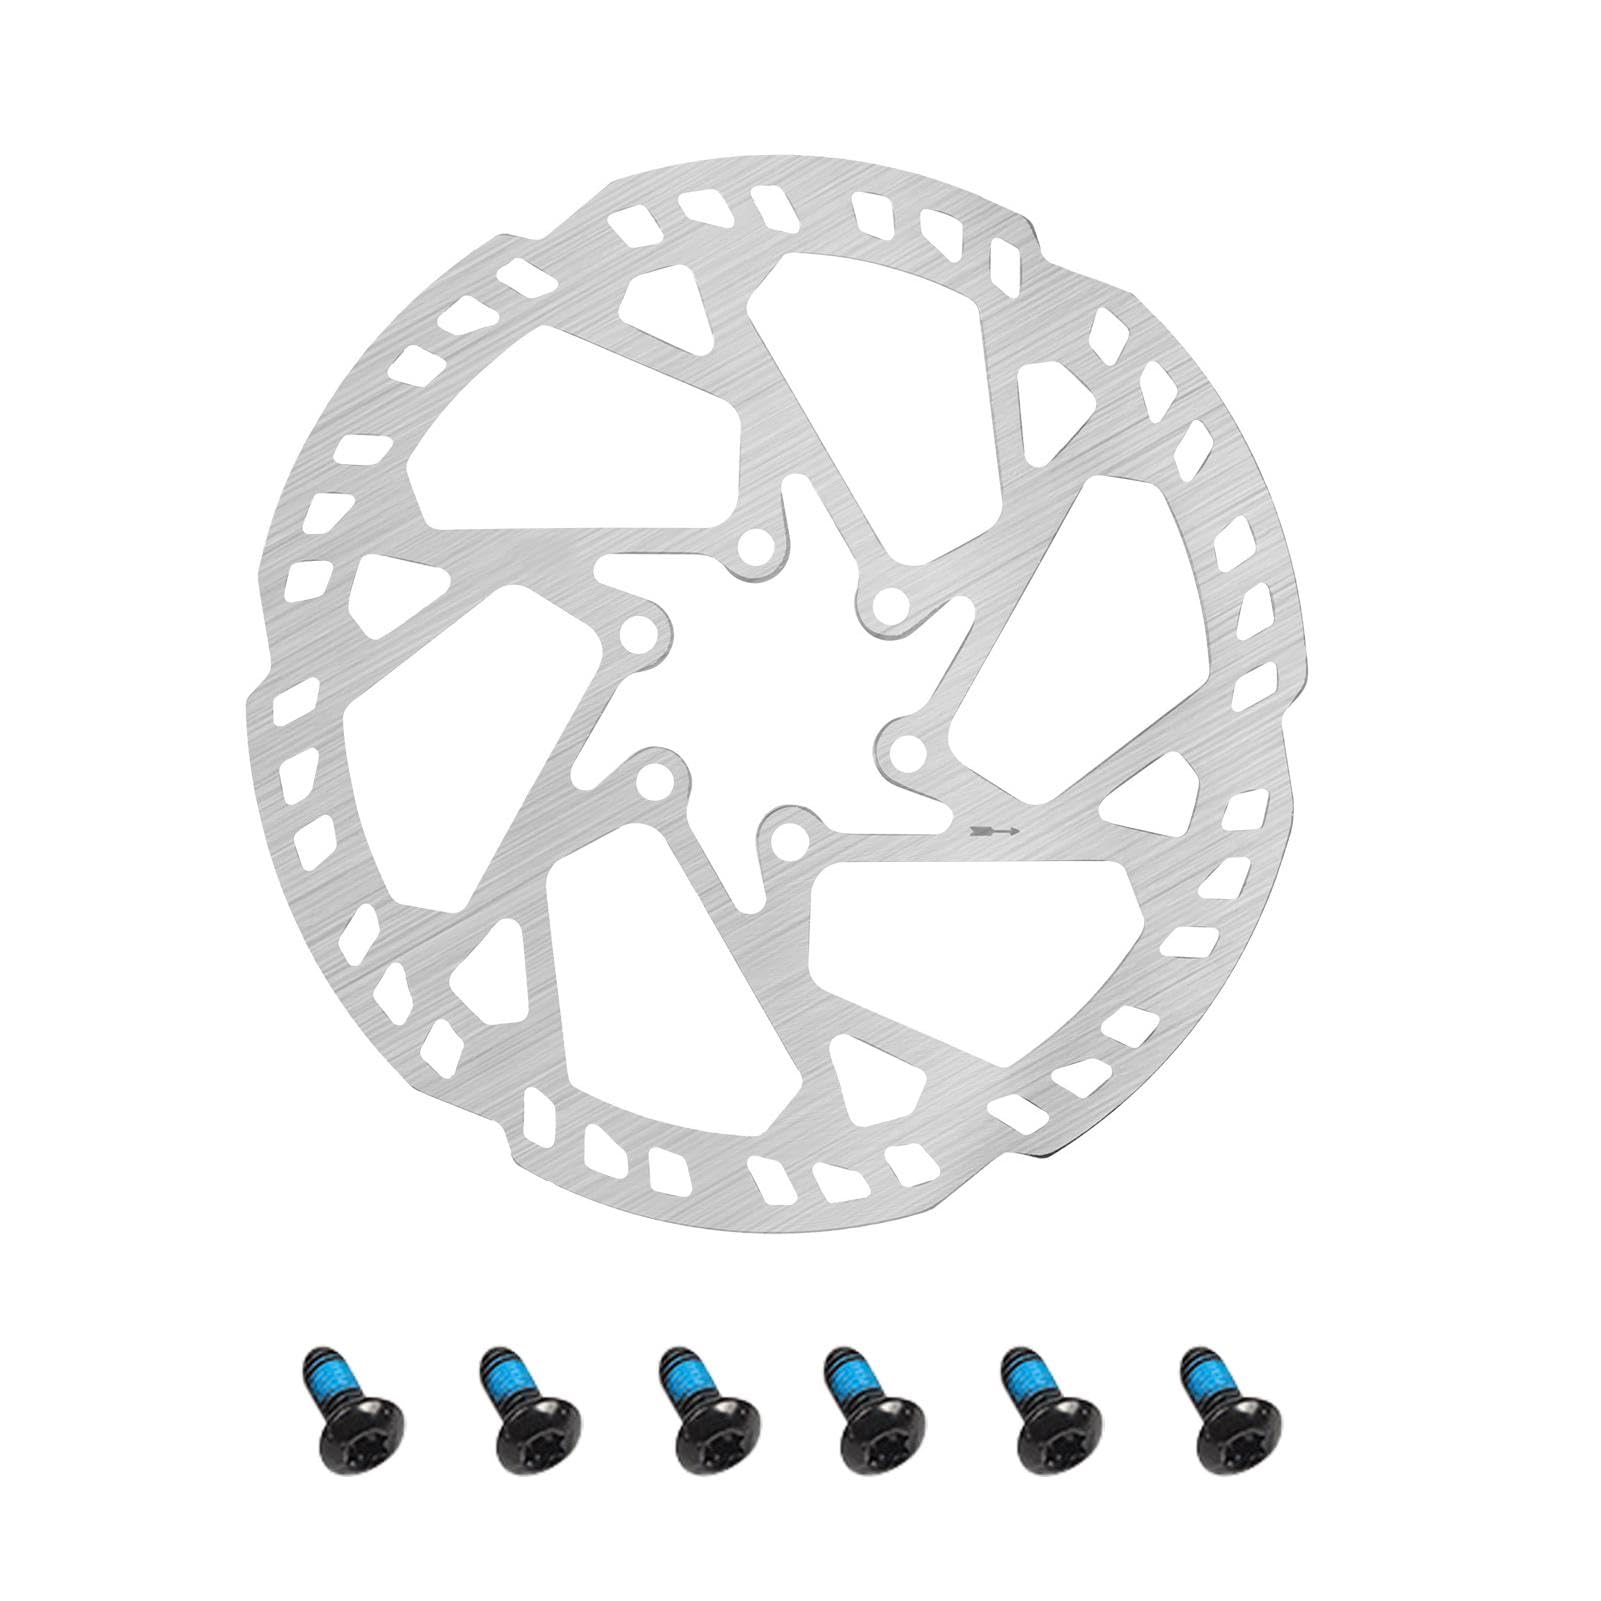 Scheibenbremse,Bremsscheiben, 203/180/160 mm Fahrradrotoren aus Stahl, Ultraleichter Bremsscheiben-Rotor-Ersatz, Fahrrad-Scheibenbremsscheibe für Elektrofahrzeuge von Hudhowks